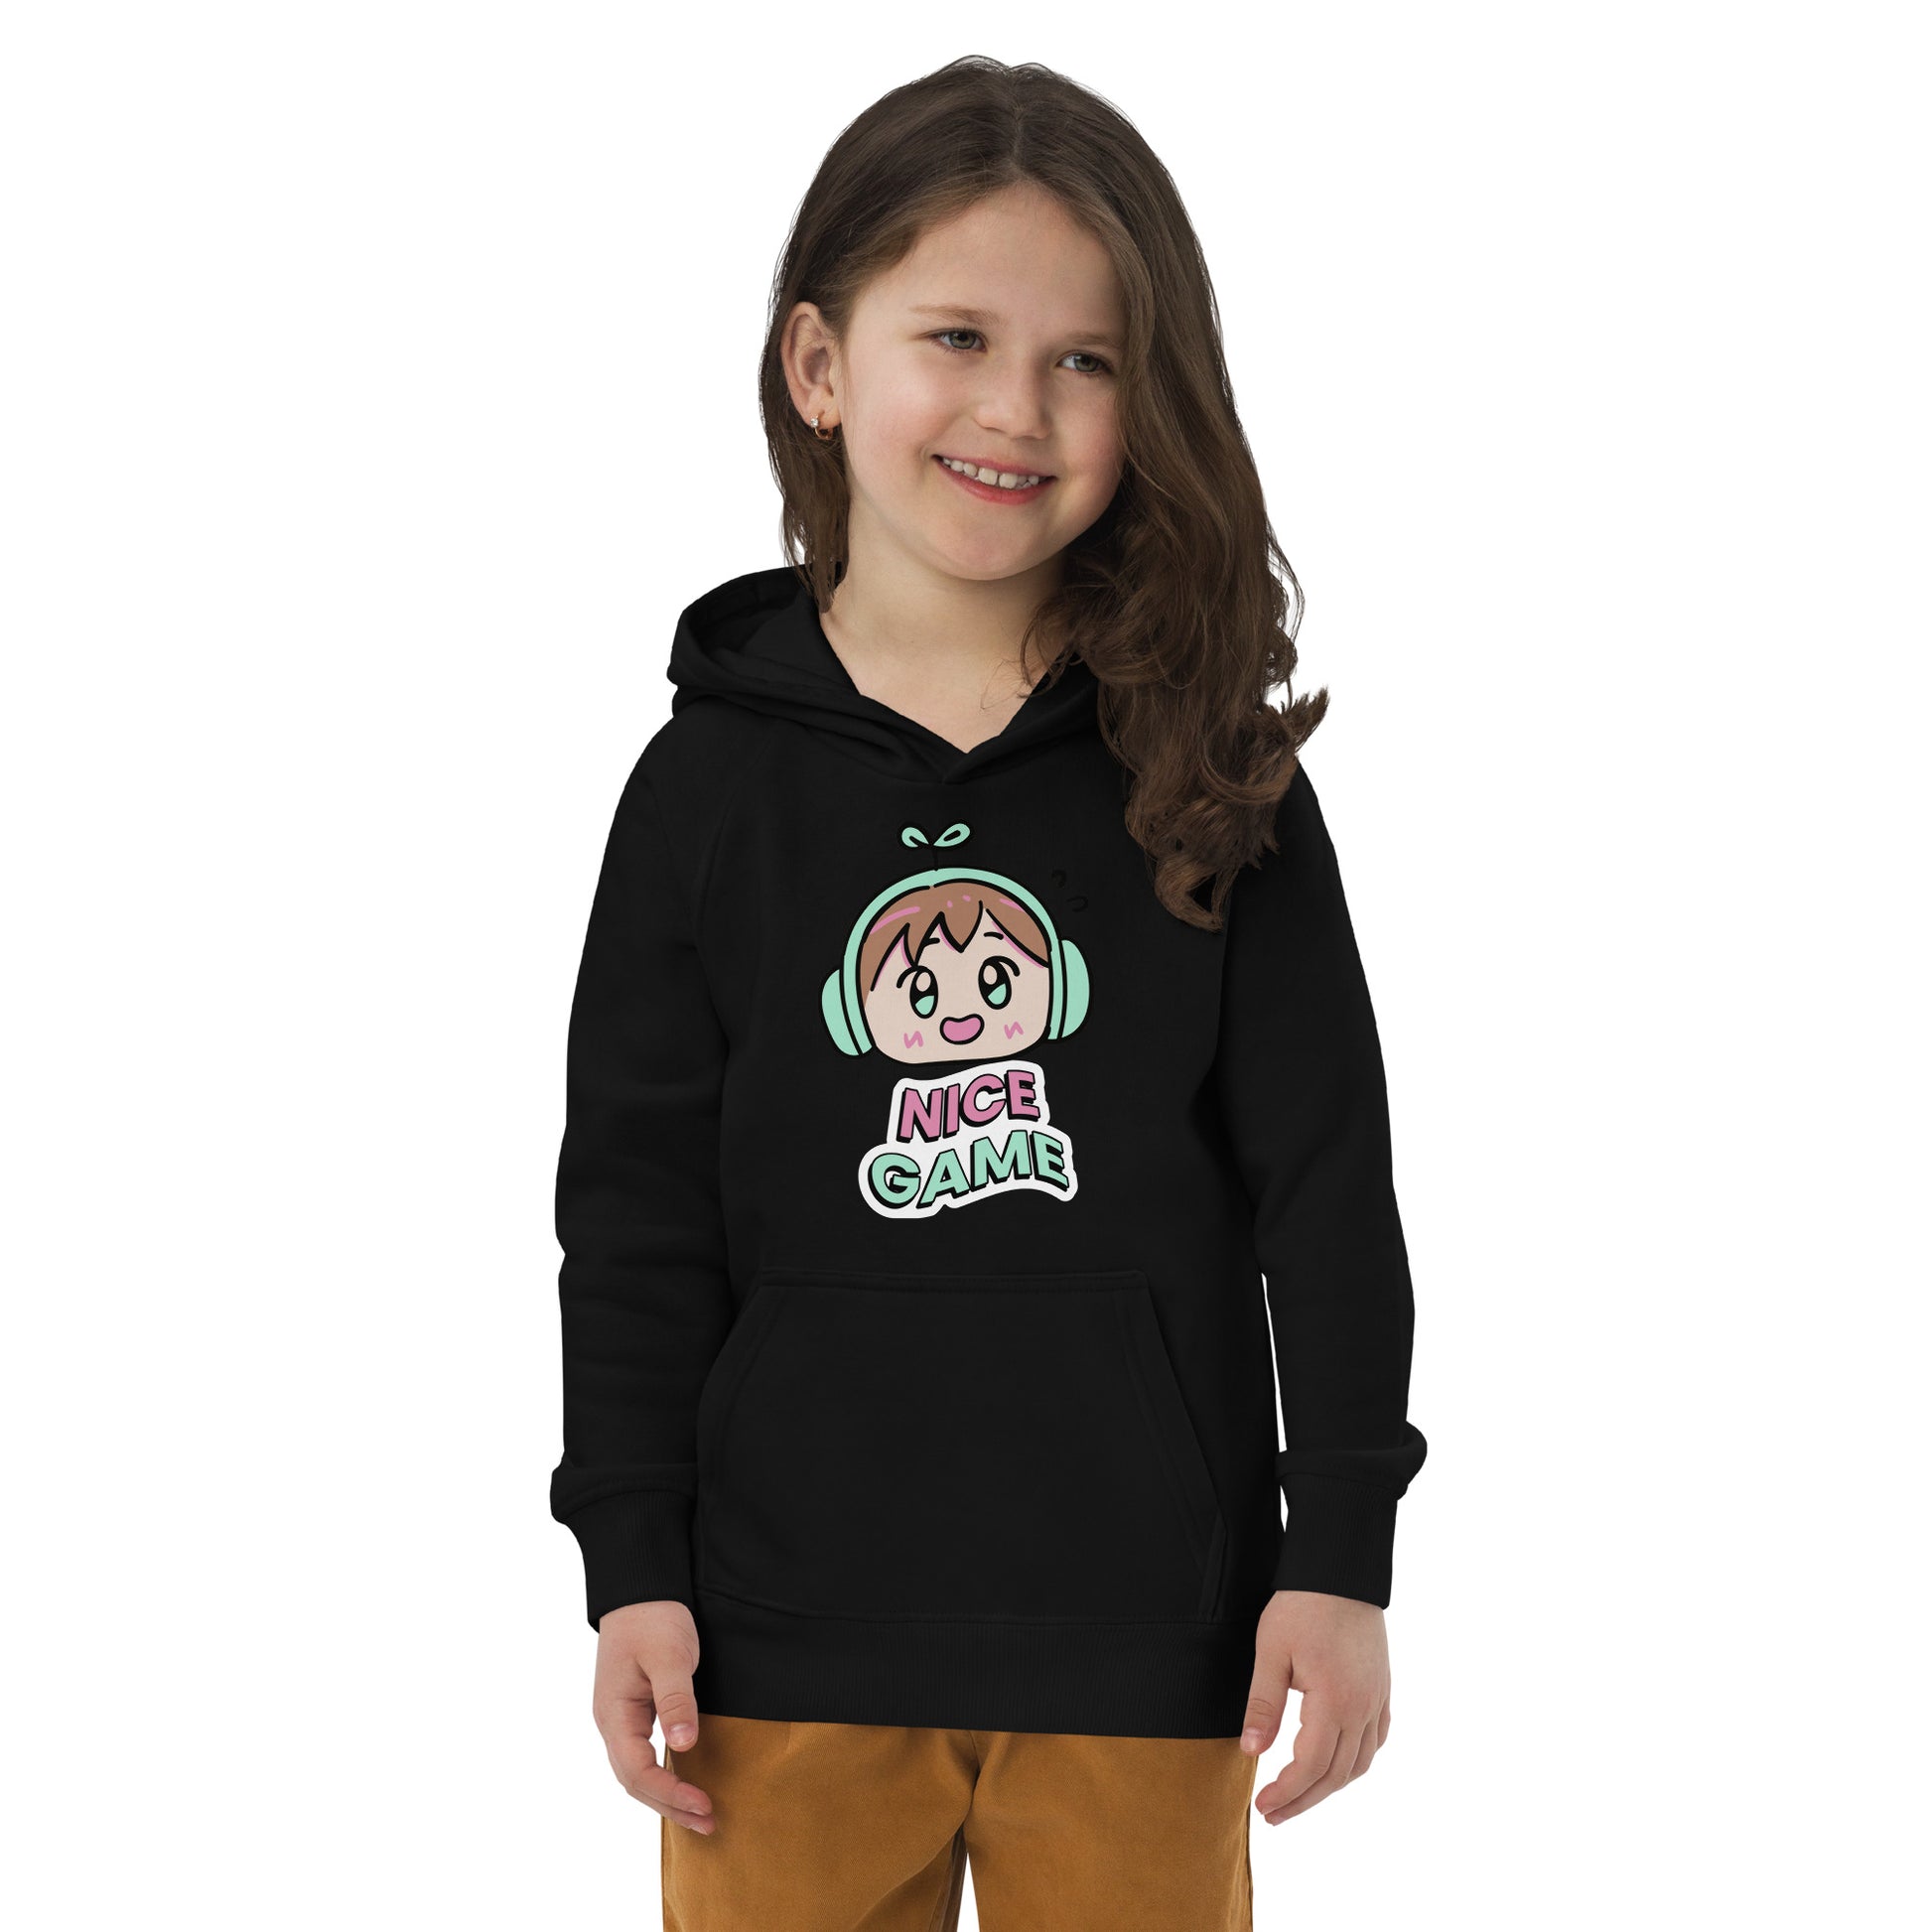 Nice Game - Kids eco hoodie - HobbyMeFree